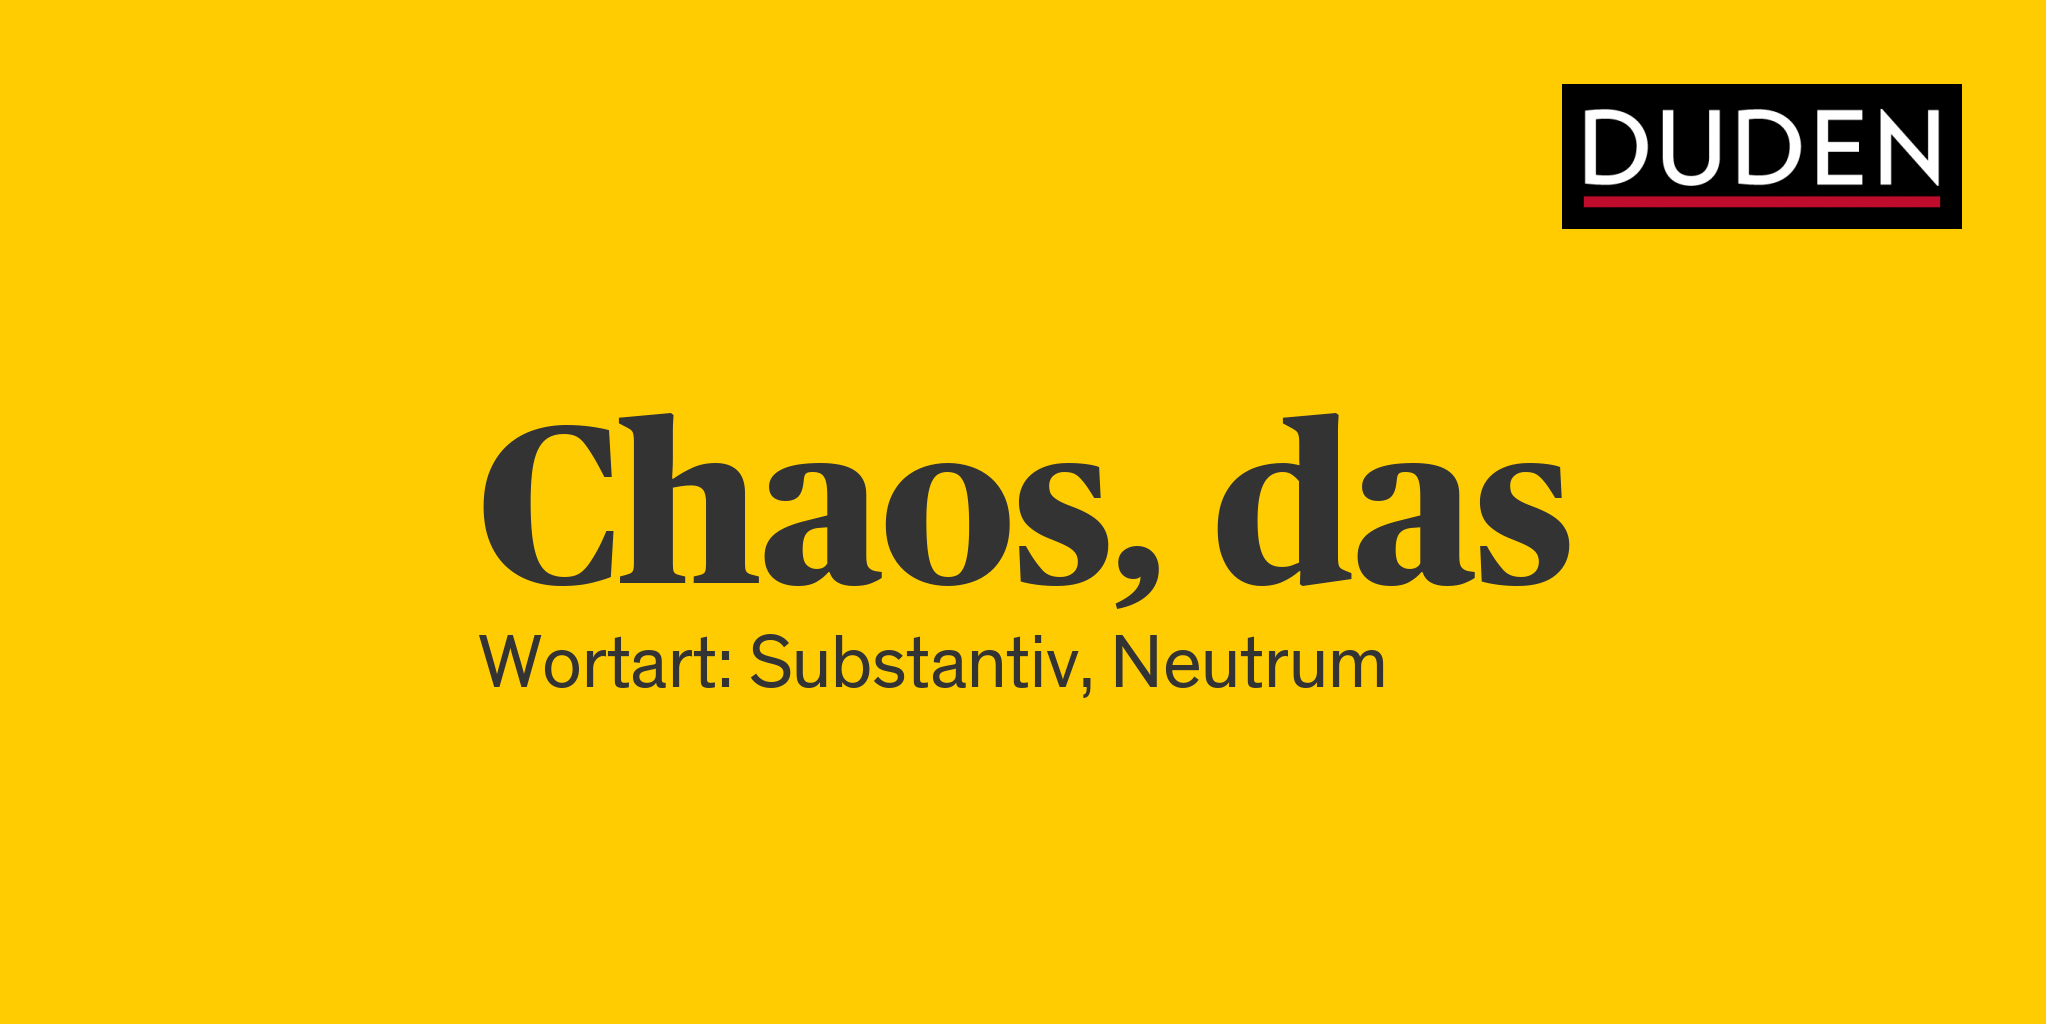 Duden Chaos  Rechtschreibung Bedeutung Definition  